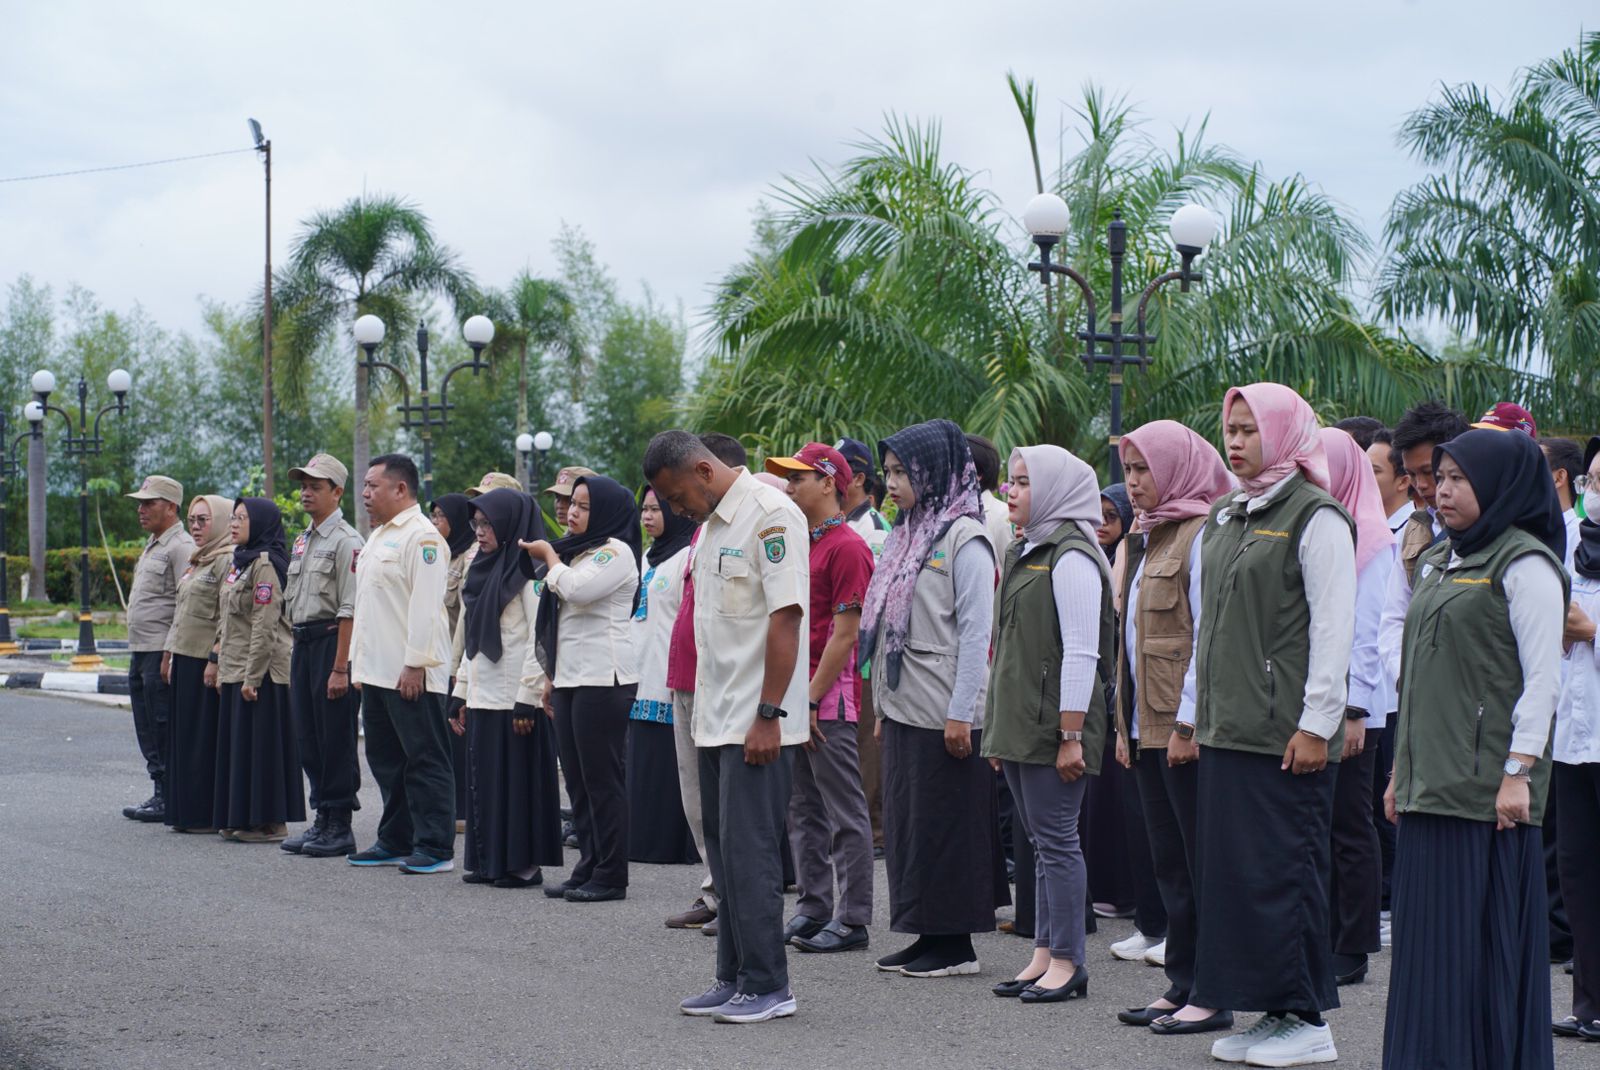 DinsosP3APMD Balangan Lepas 100 Peserta Jambore Akbar Relawan Sosial PSKS – headline9.com